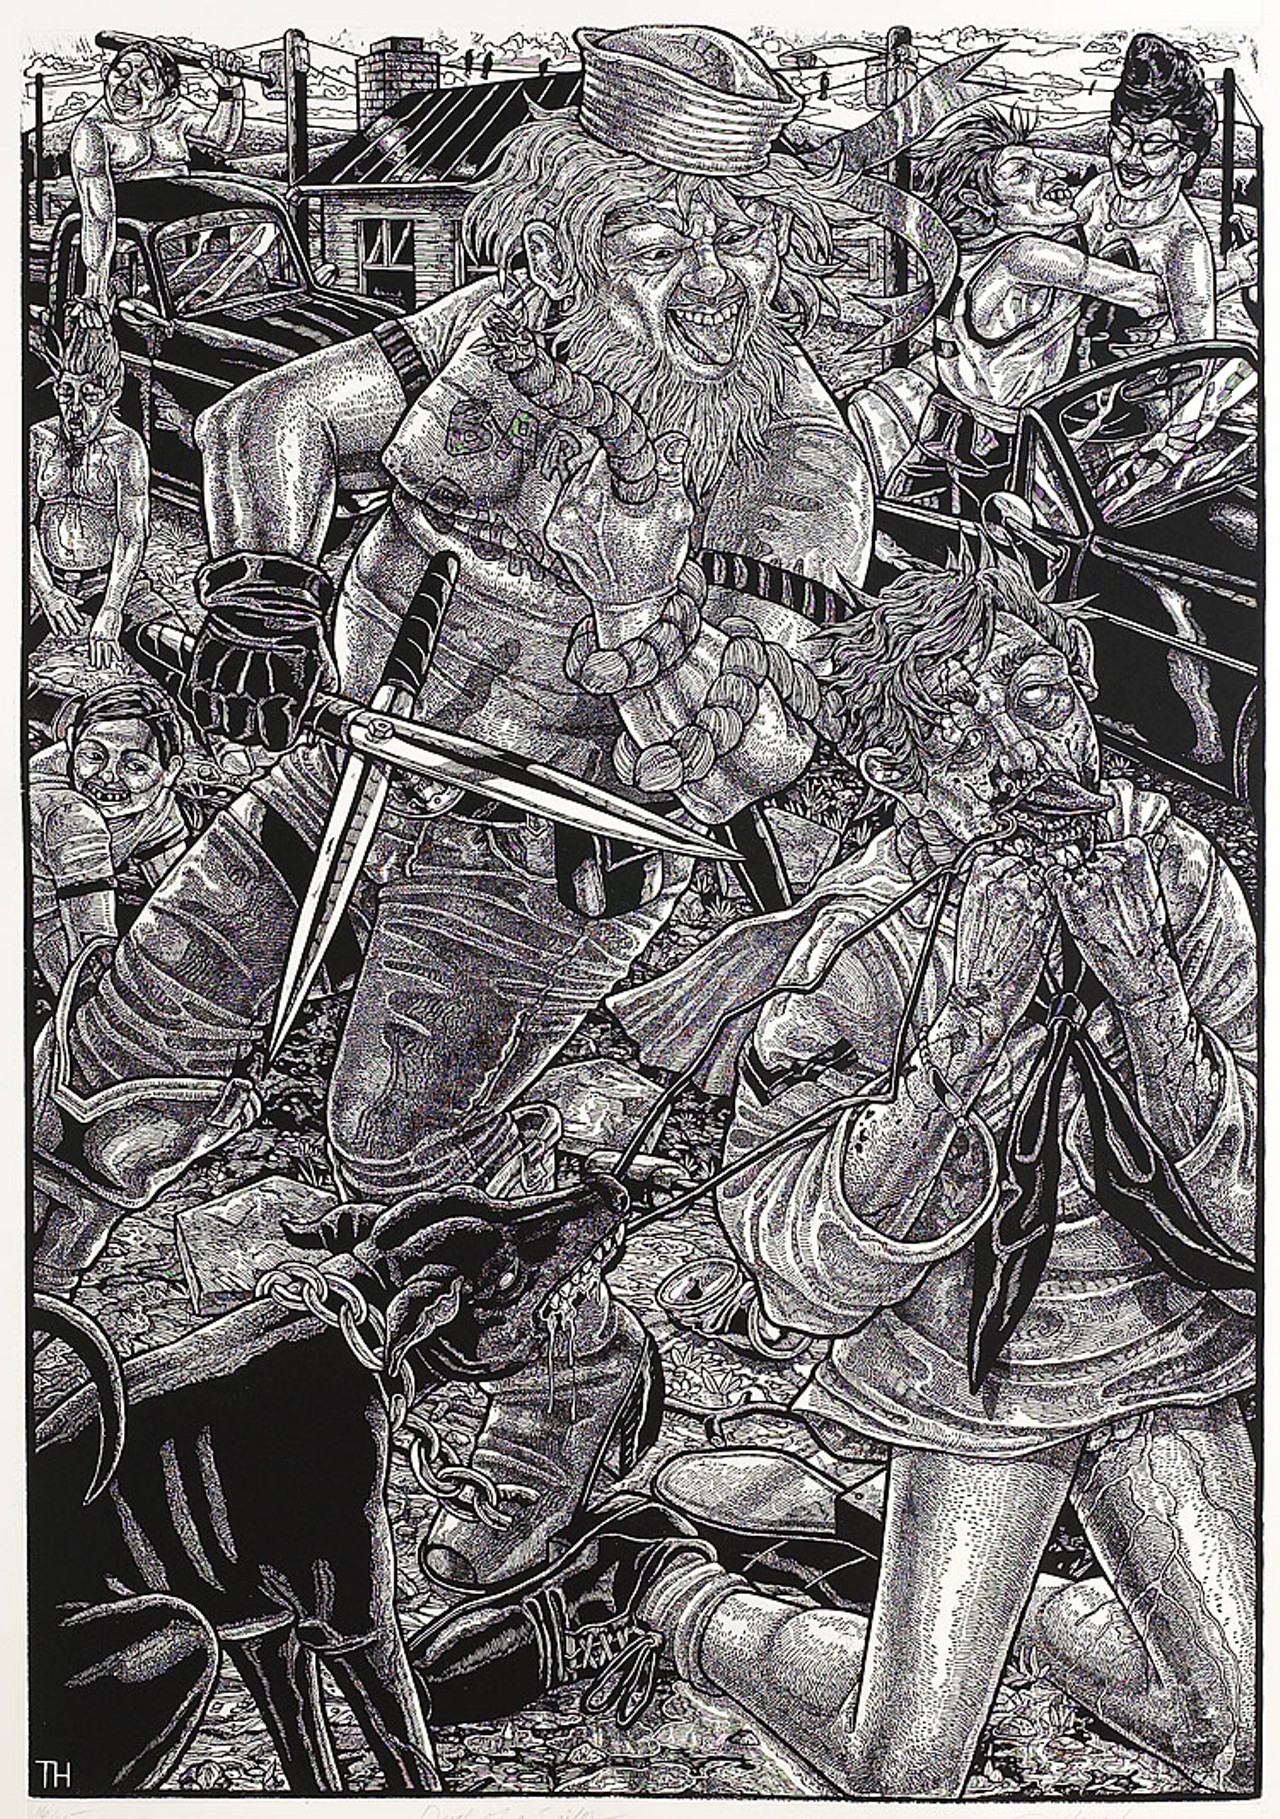 Tom Huck, "Death of a Sailor" (woodcut, 38" x 52", 2001)